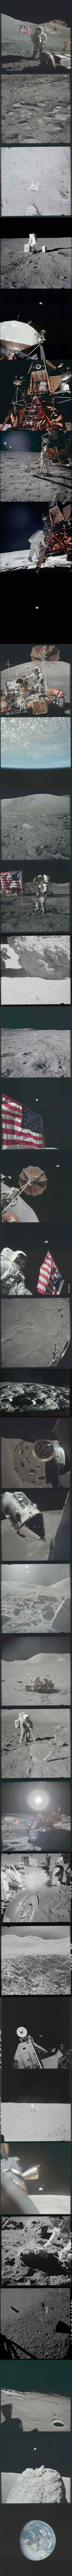 Moon Landing Photos